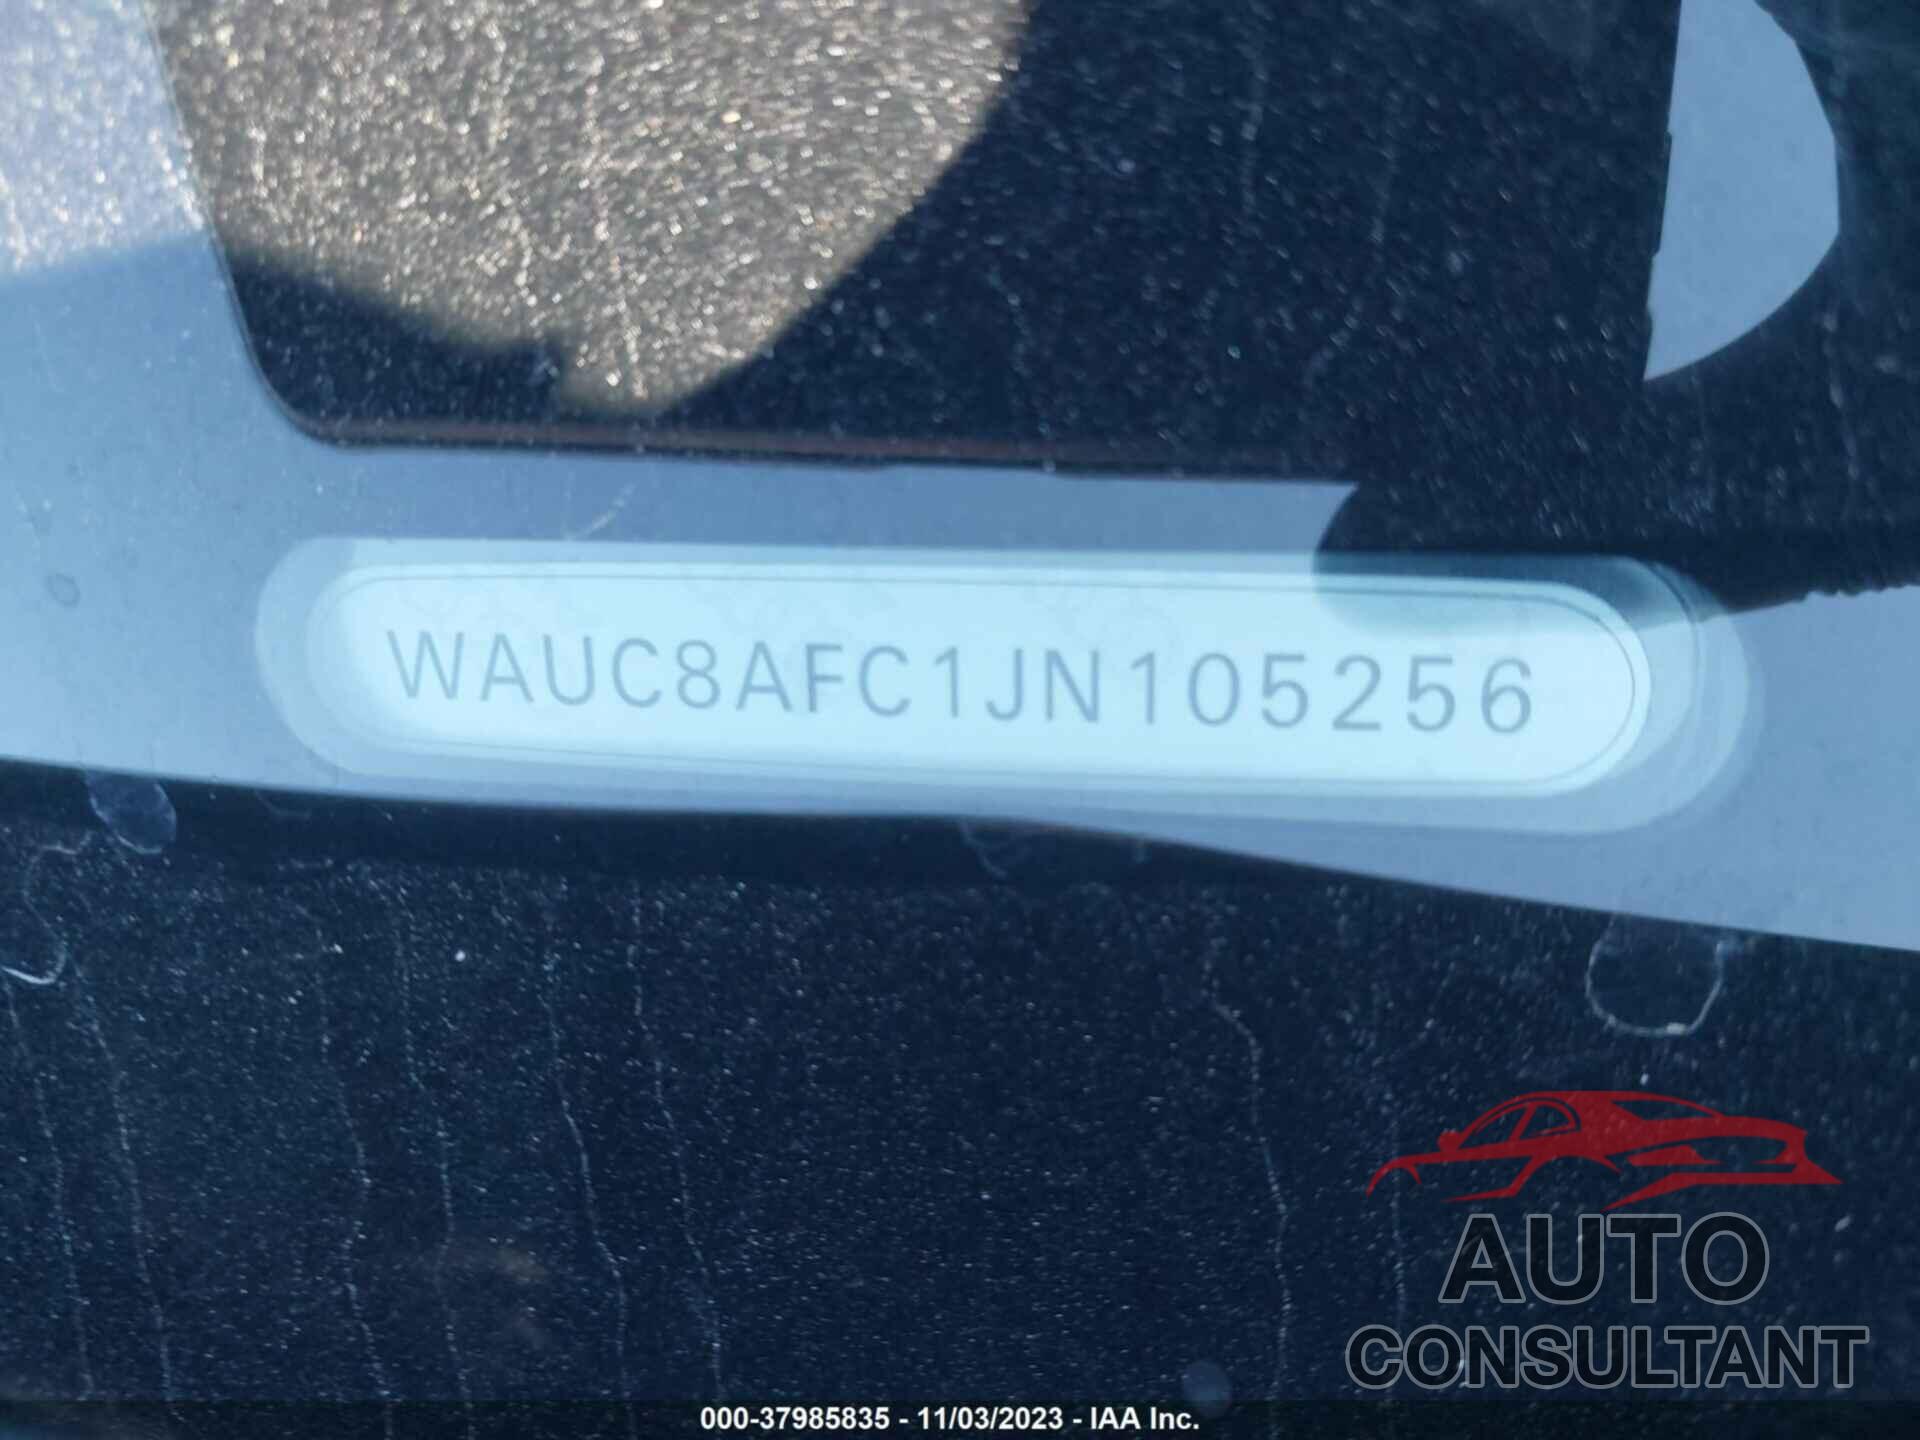 AUDI A6 2018 - WAUC8AFC1JN105256